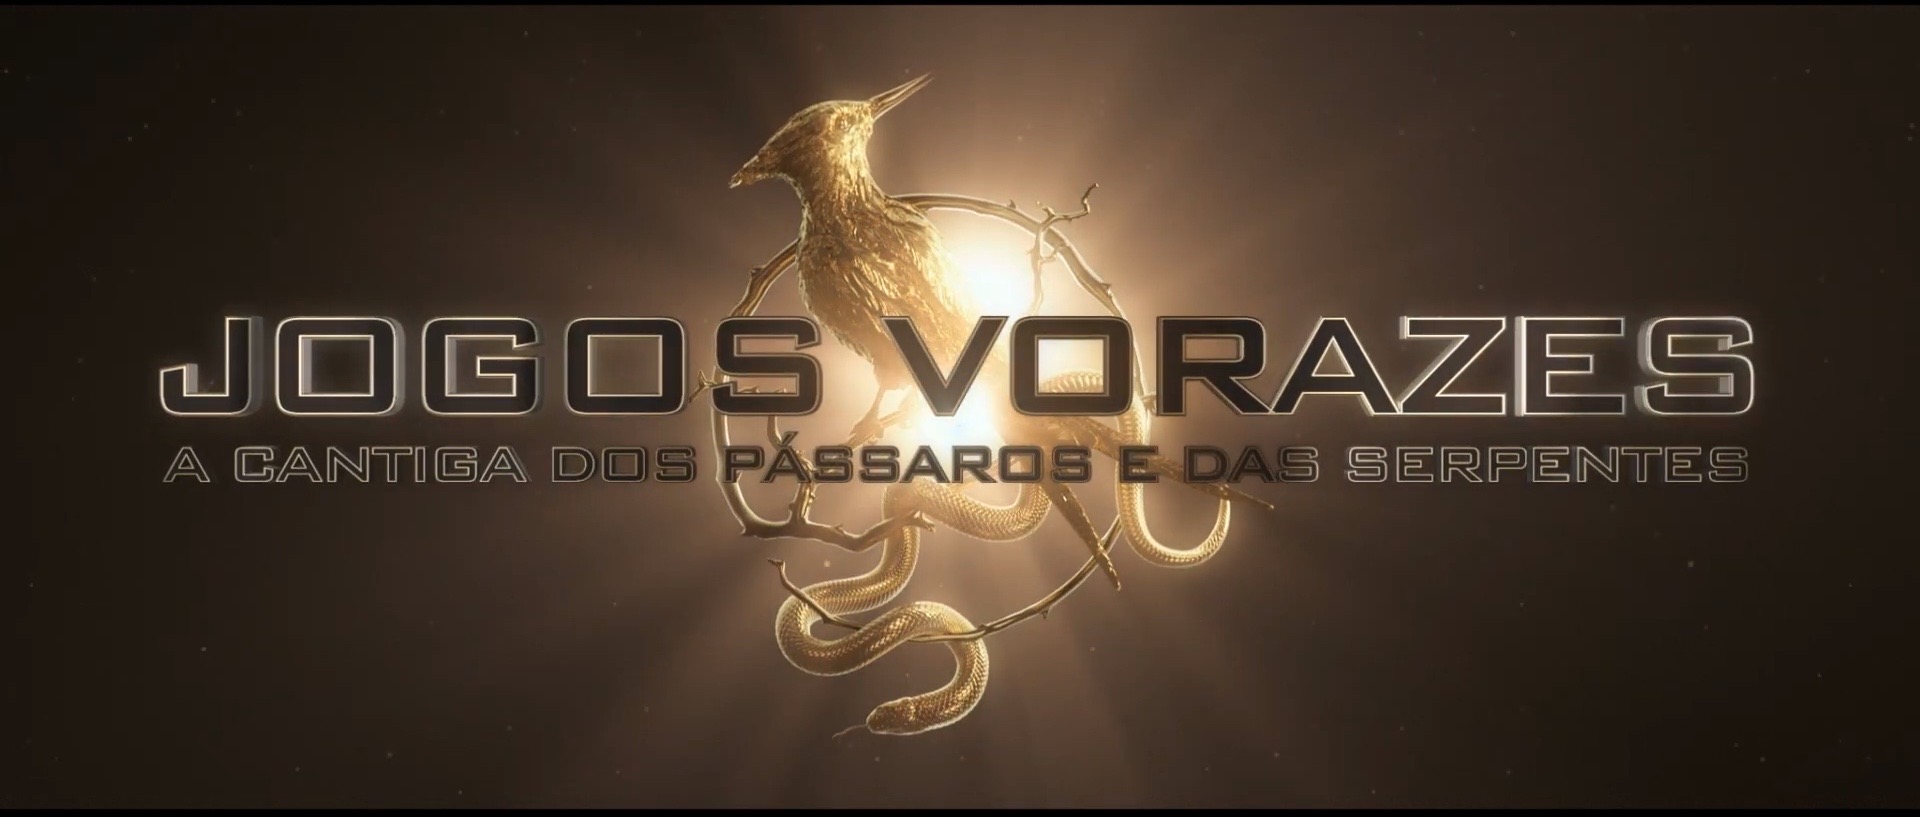 Tracklist da trilha sonora do novo filme da saga Jogos Vorazes choca pelo  FRACASSO - Notícias Musicais - BCharts Fórum